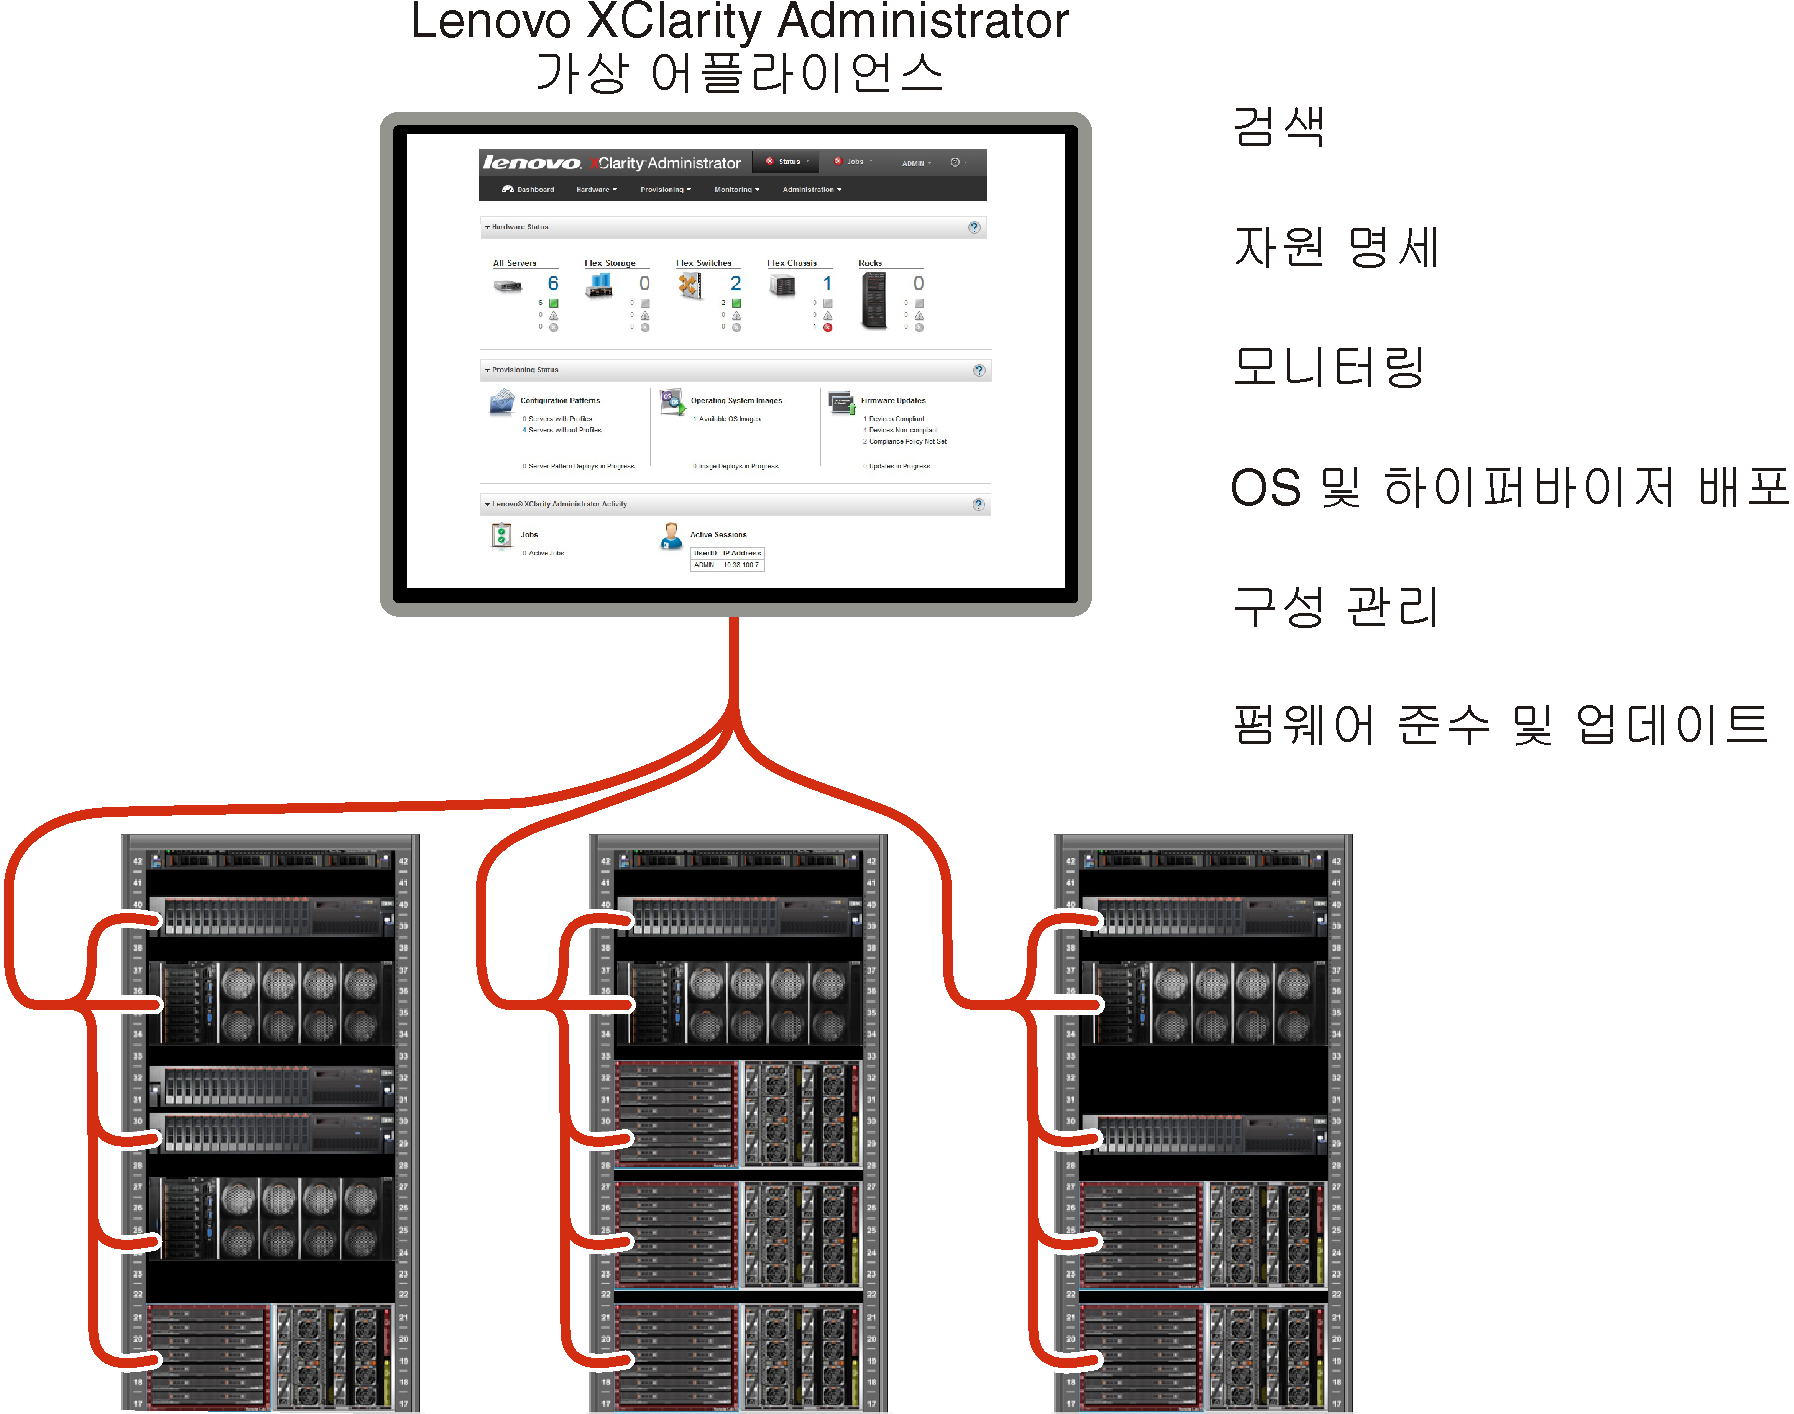 여러 섀시를 관리하고 Lenovo XClarity Administrator의 기본 기능을 나열하는 Lenovo XClarity Administrator를 표시하는 그래픽입니다.